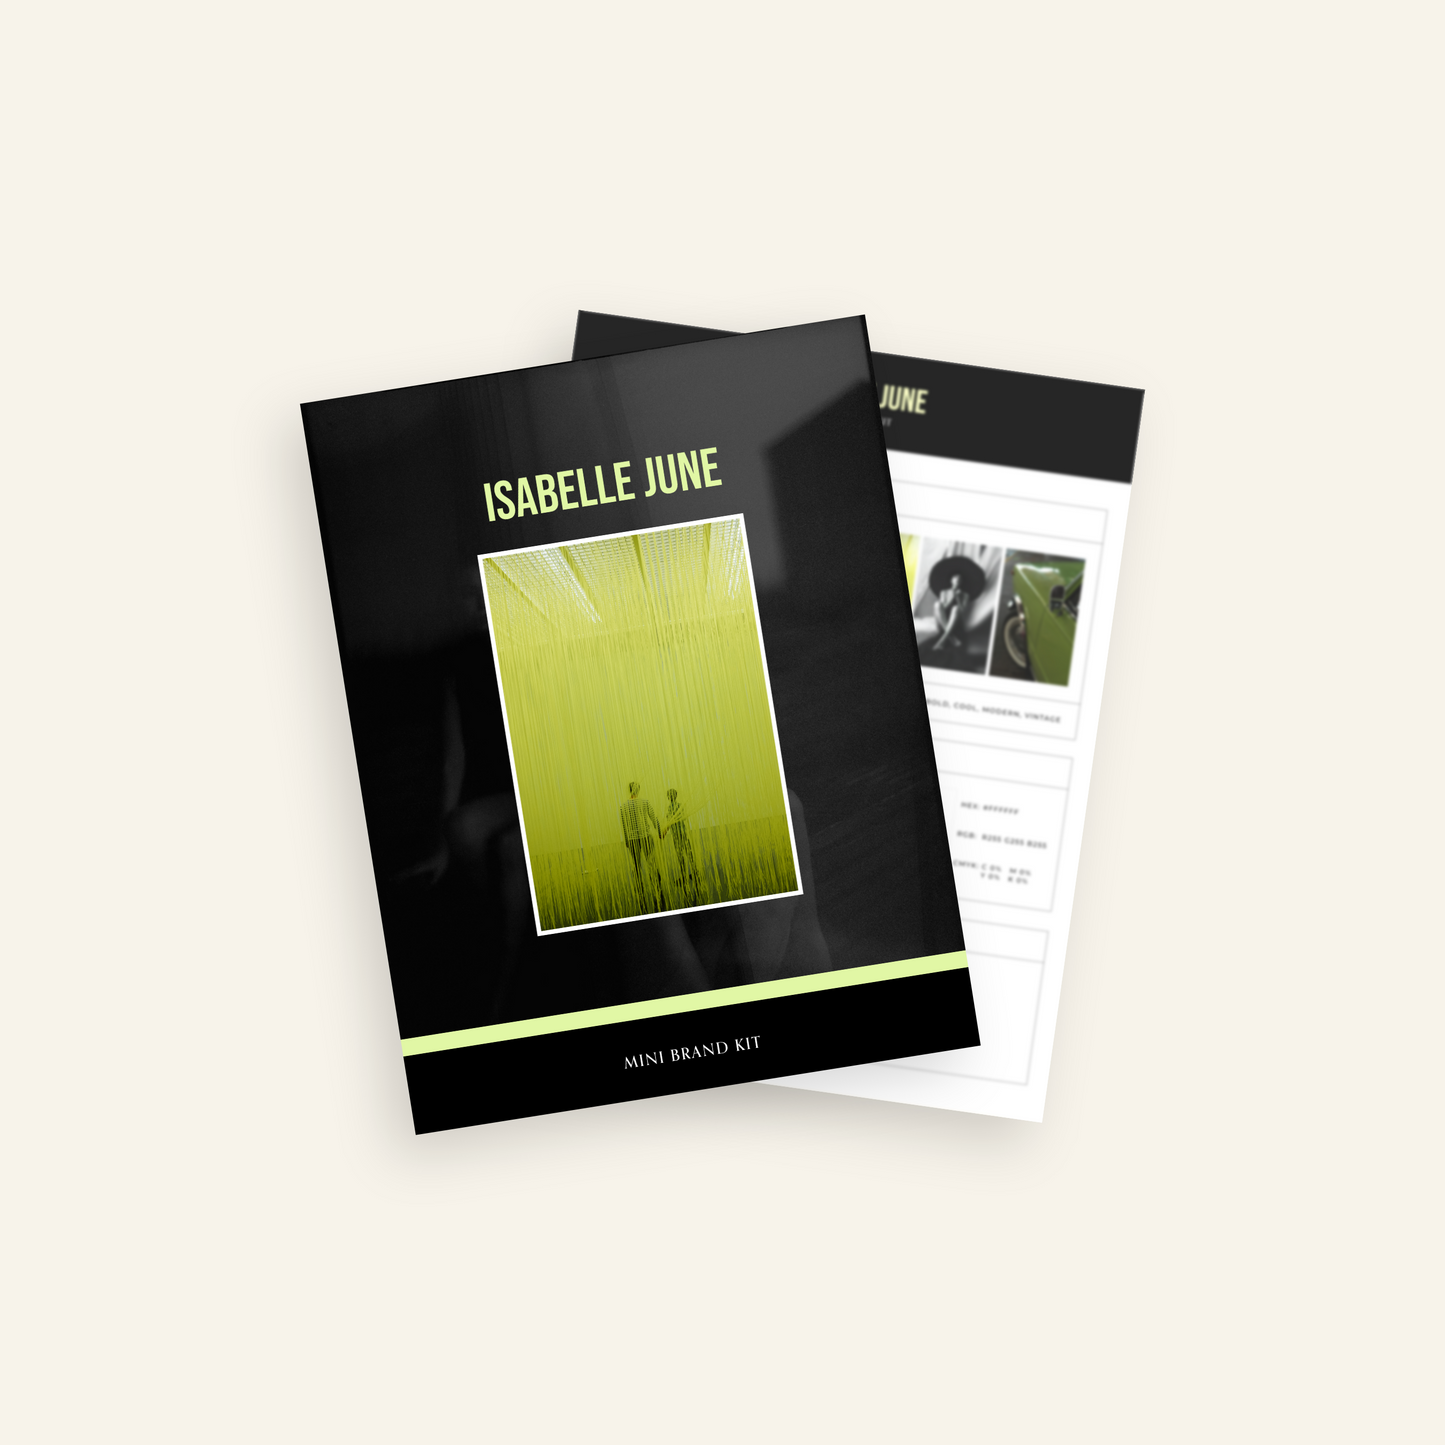 Isabelle June - Branding Kit